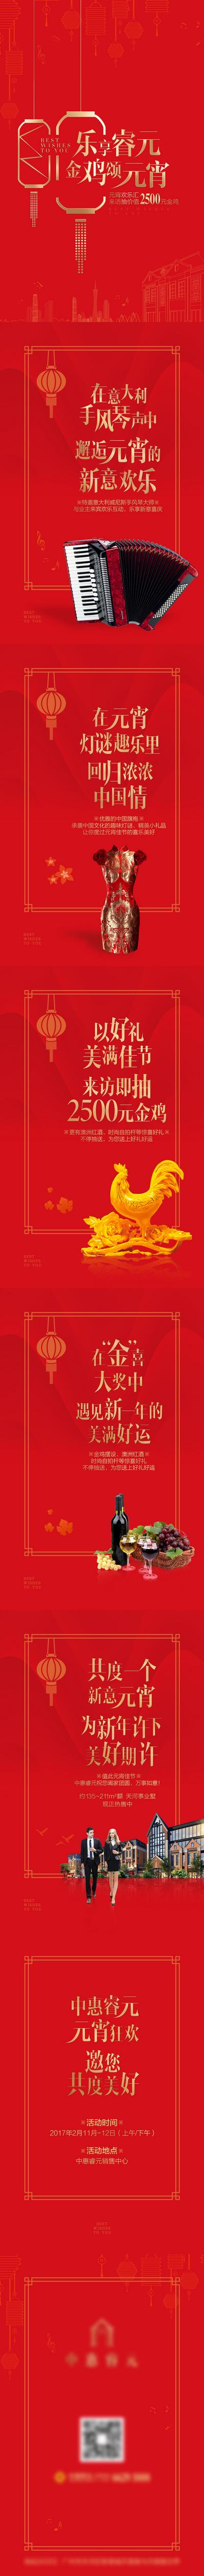 南门网 专题设计 房地产 中国传统节日 元宵节 h5 手风琴 旗袍 红酒 狂欢